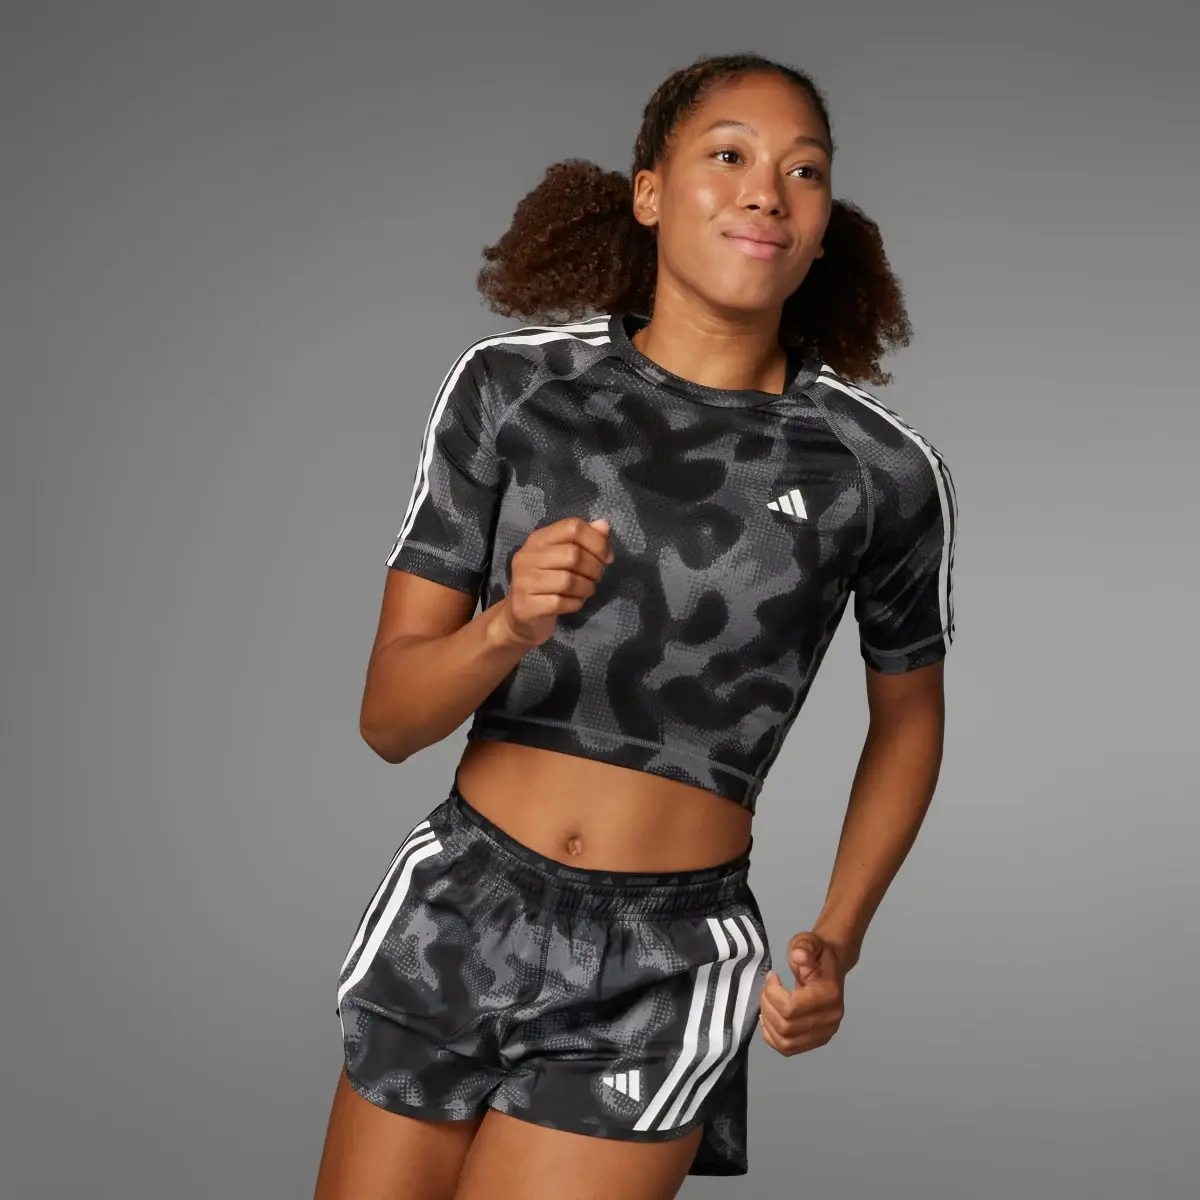 Adidas Own the Run 3-Stripes Allover Print Shorts. 1